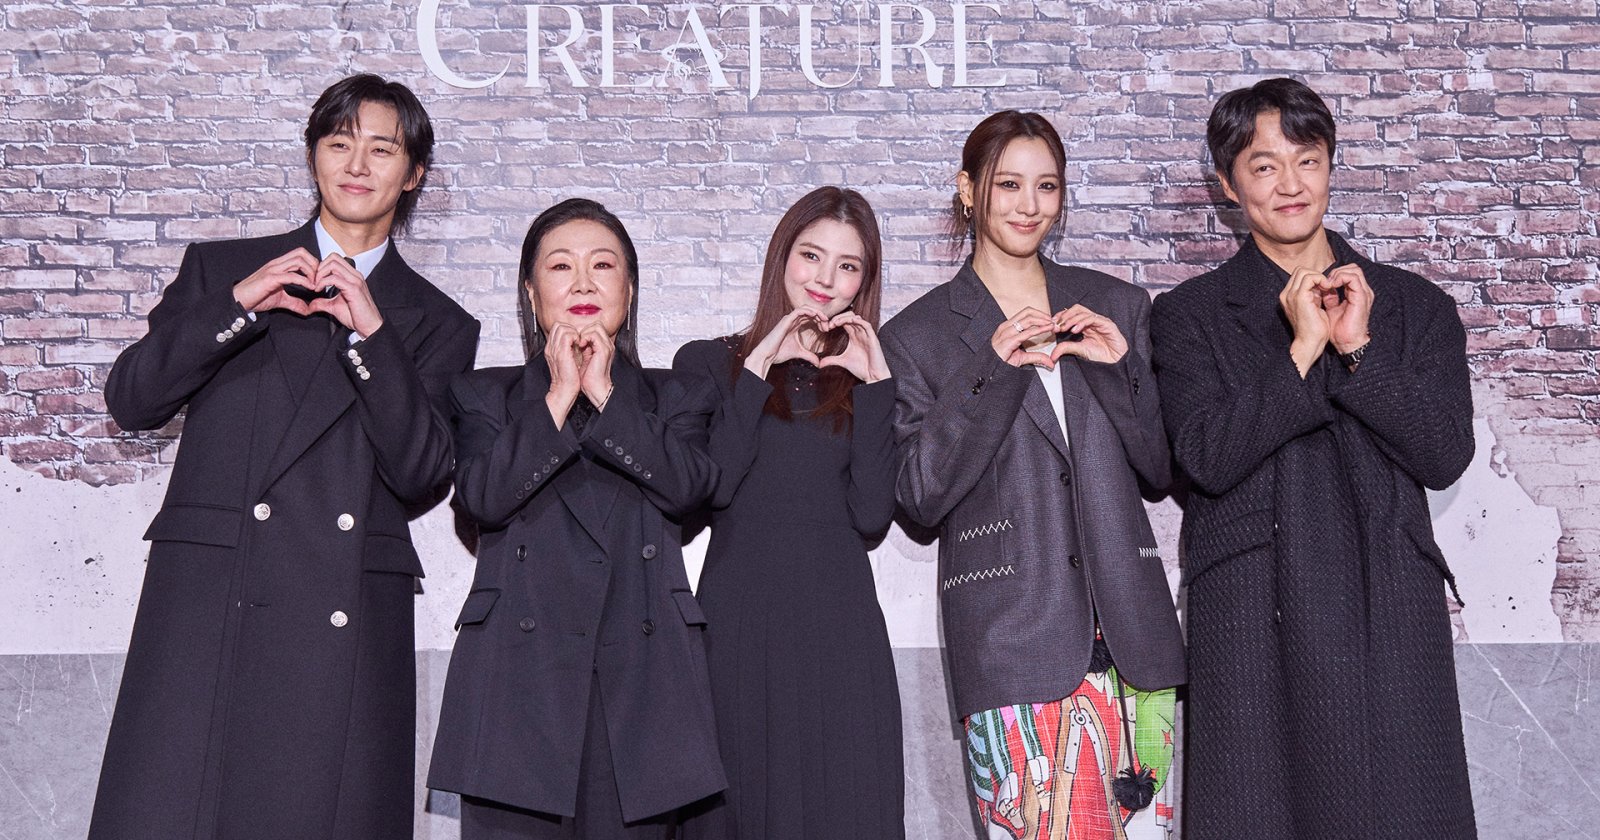 สัมภาษณ์ พัคซอจุน-ฮันโซฮี และทีมนักแสดงนำ จากซีรีส์ ‘Gyeongseong Creature’